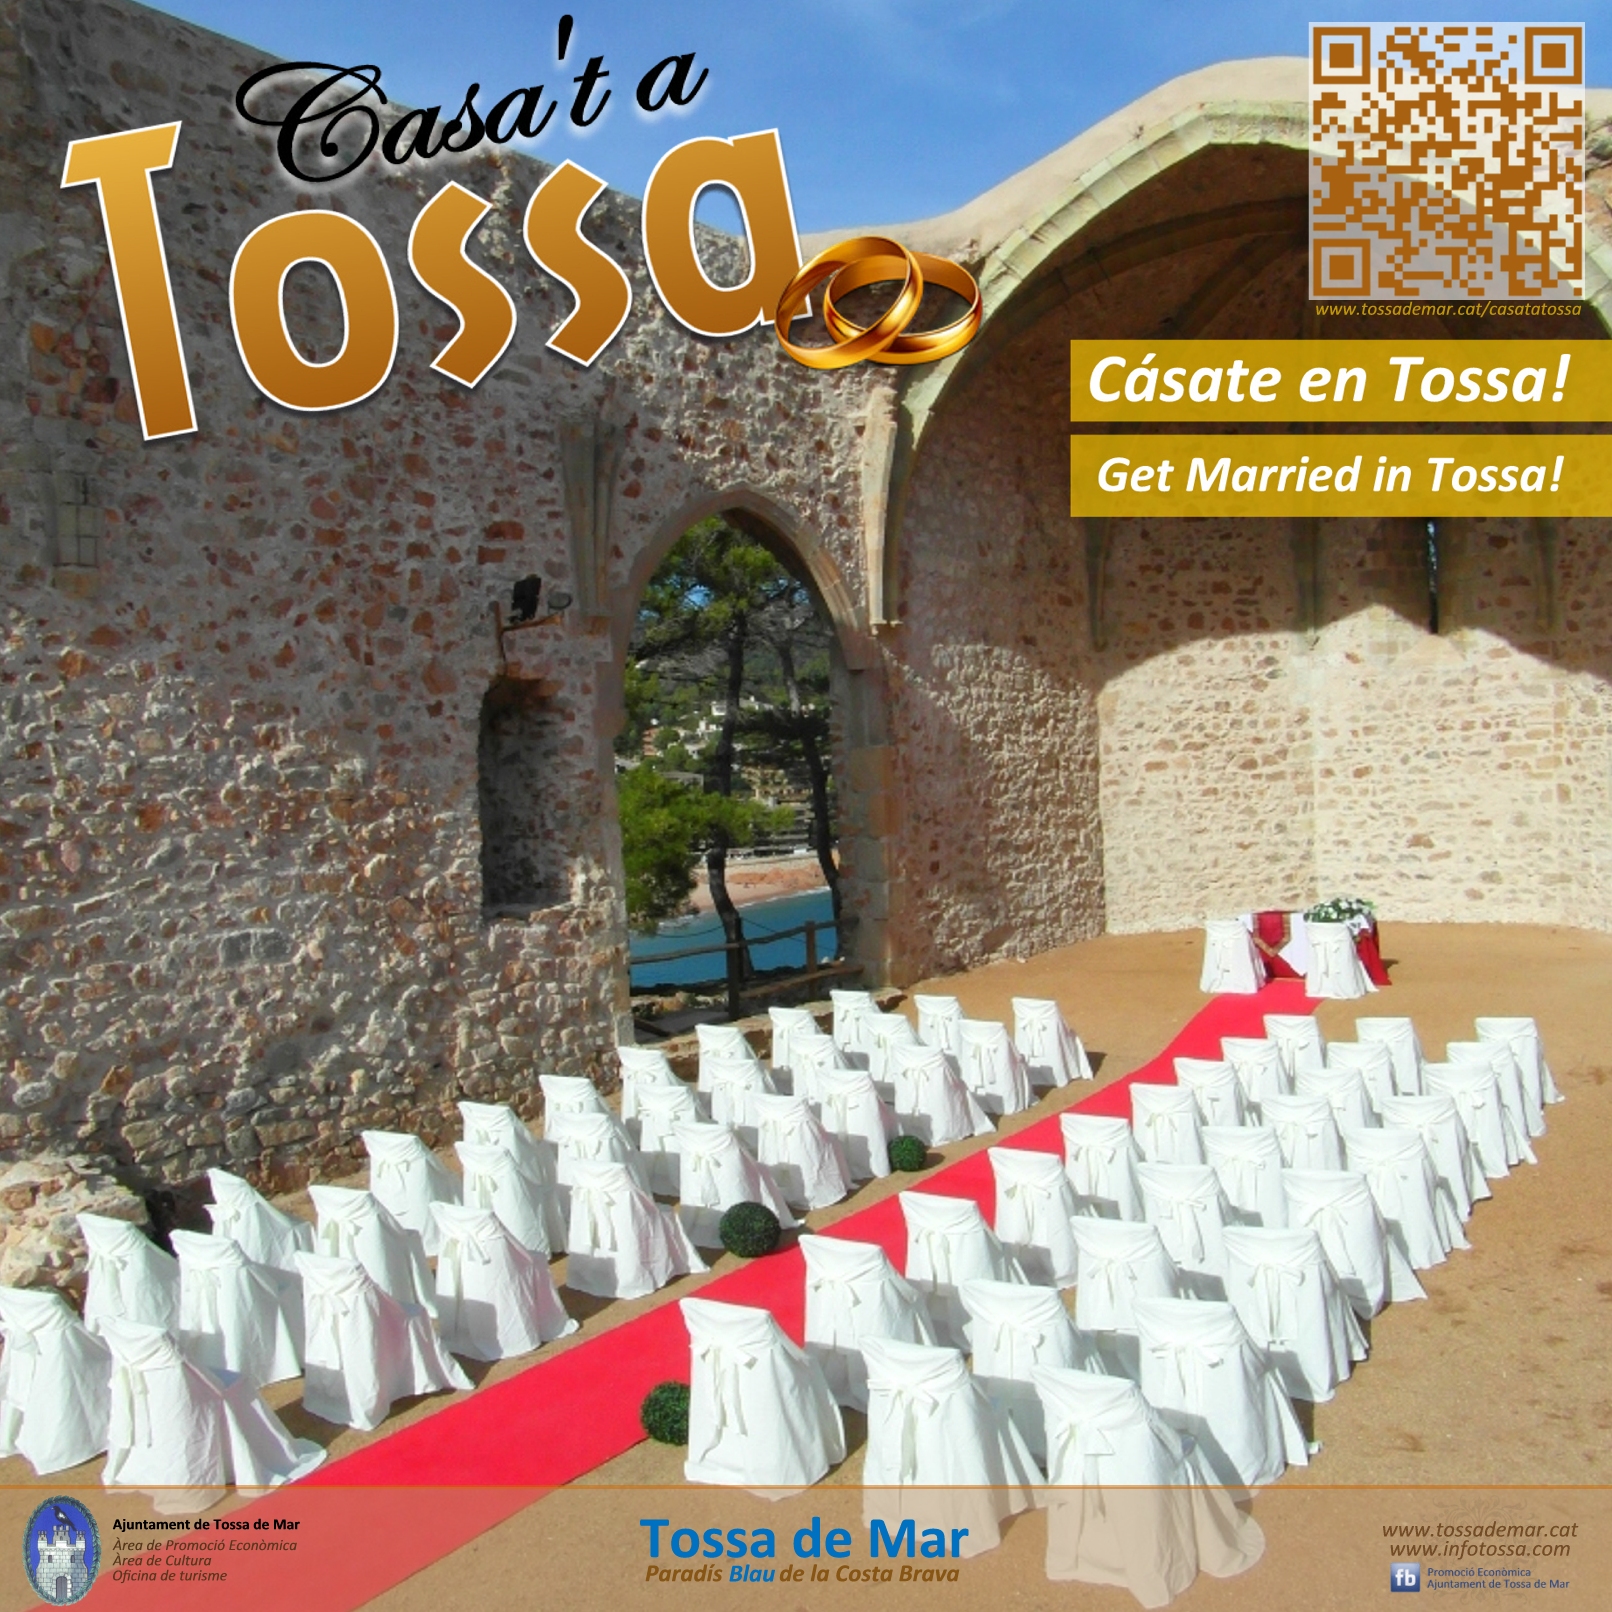 casat_tossa_1_big.jpg - 1.42 MB